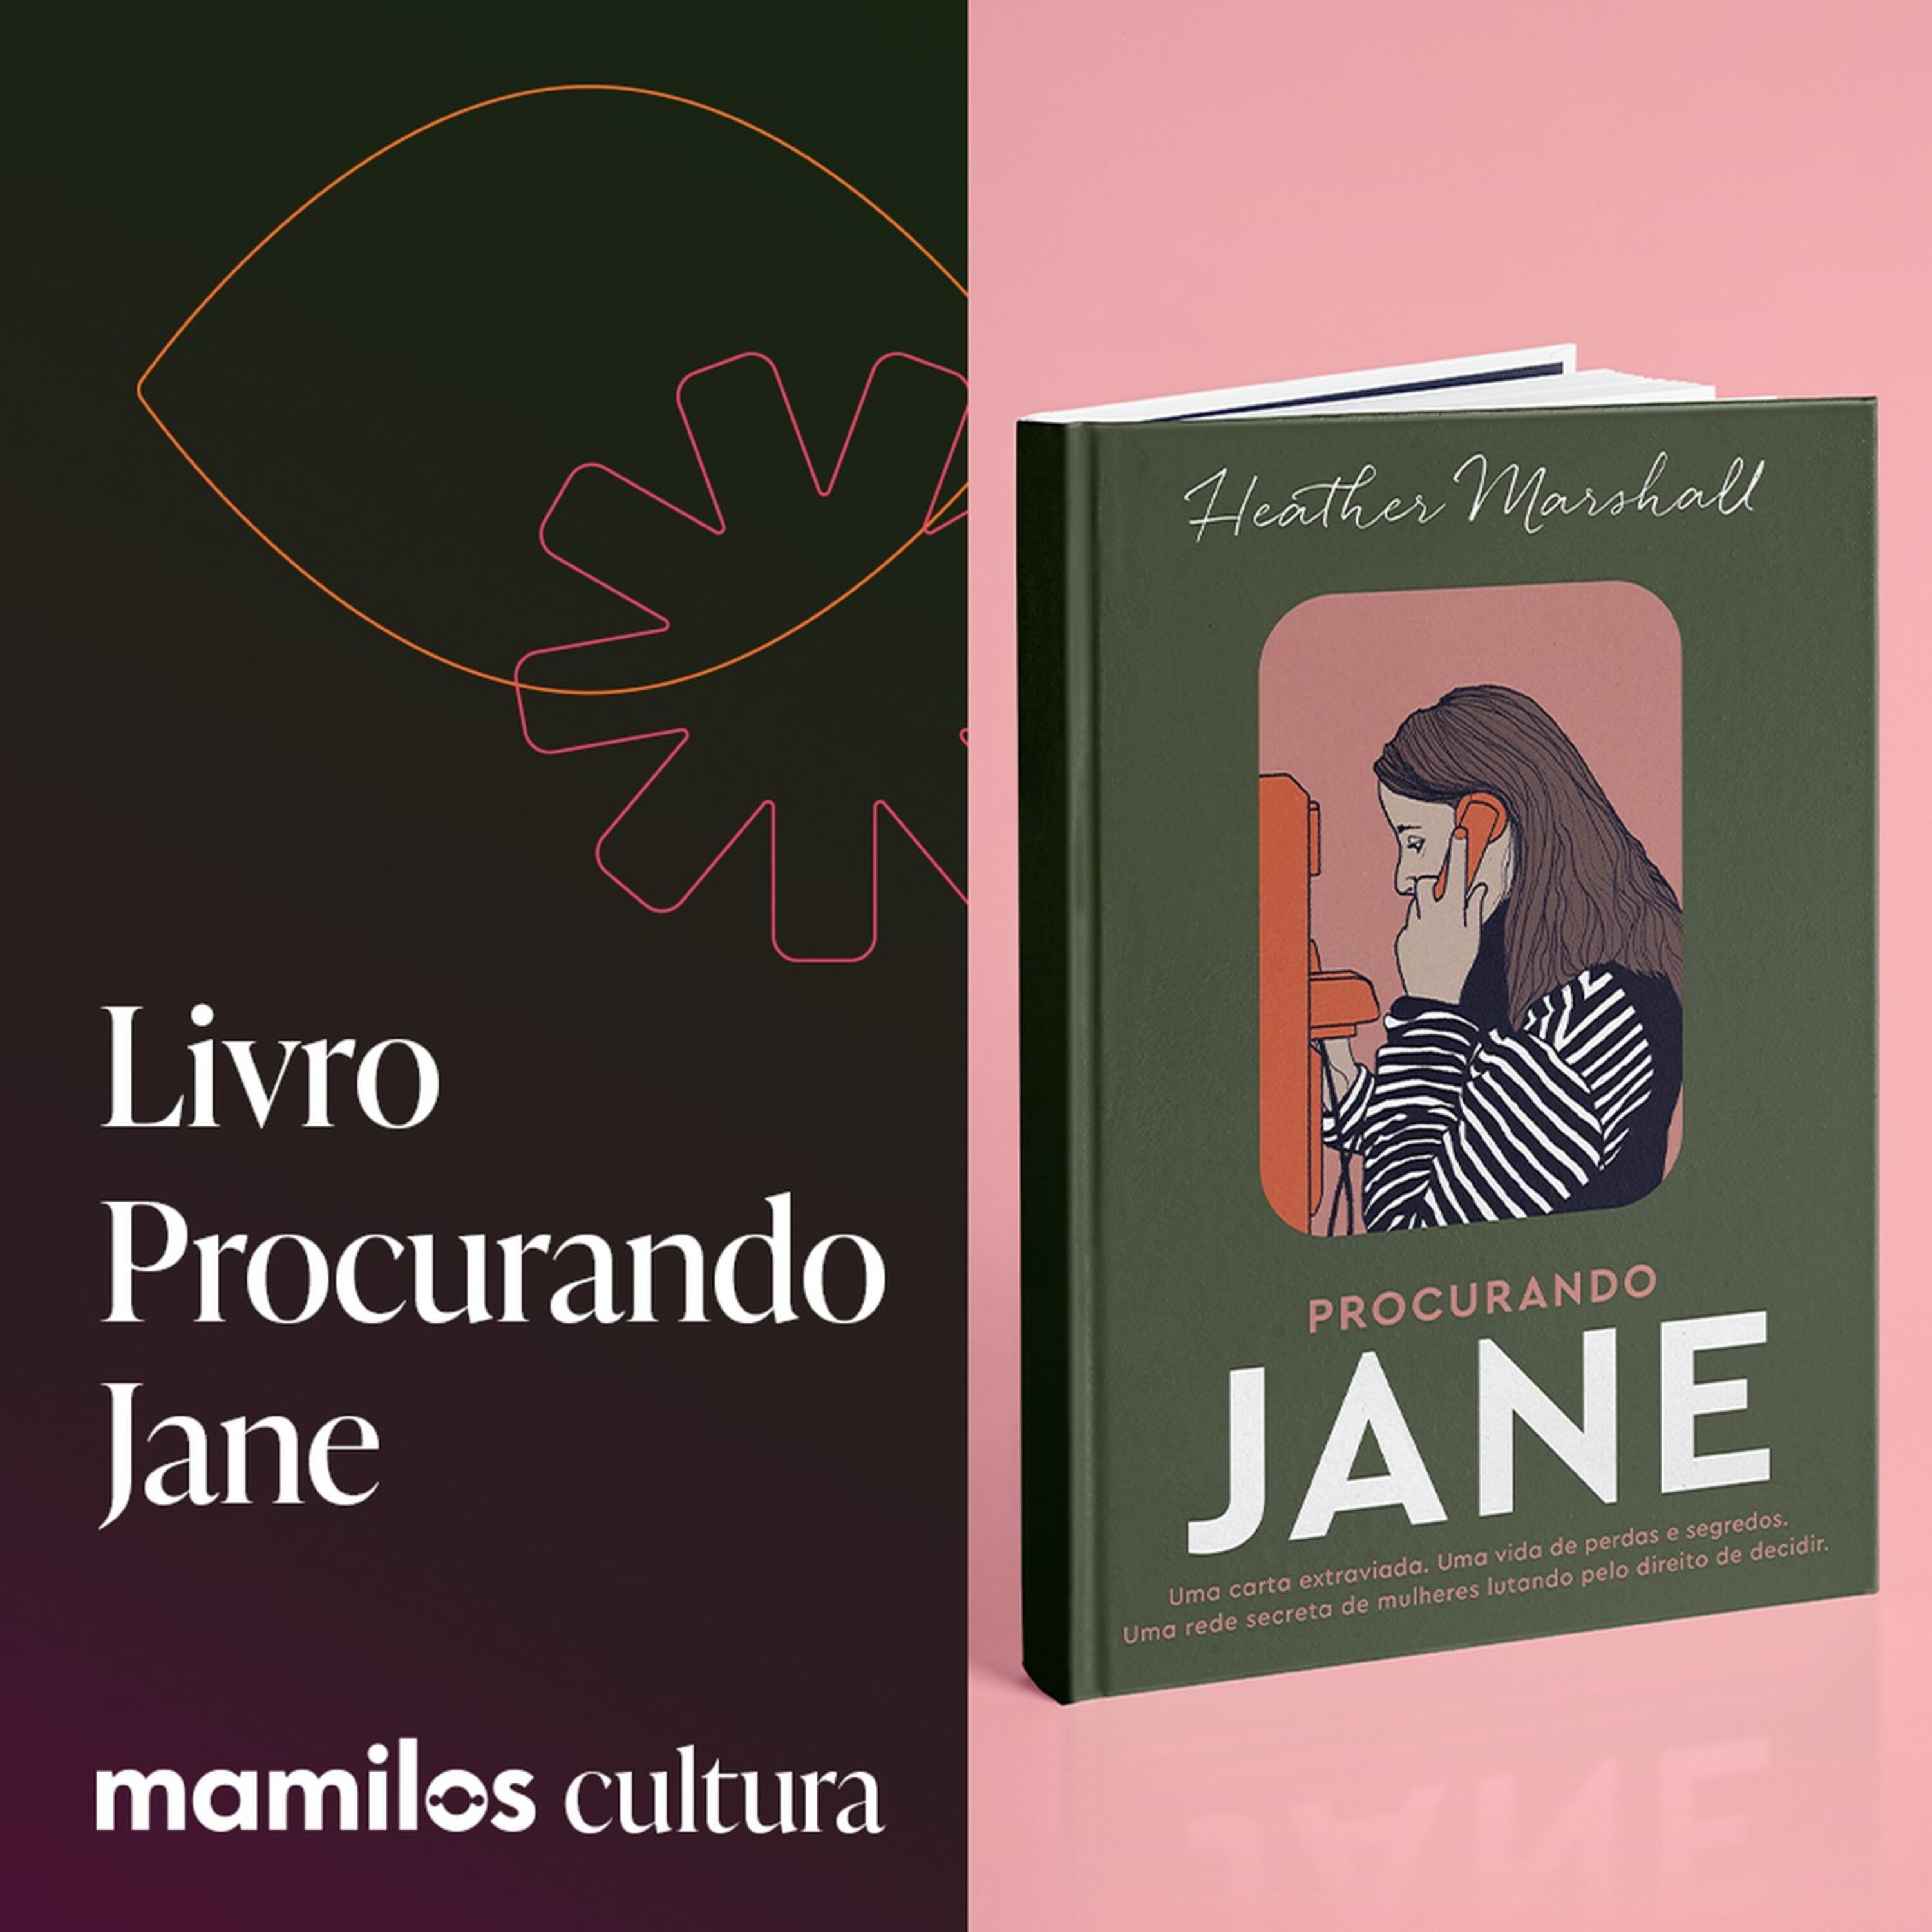 Mamilos Cultura 66: Livro “Procurando Jane” - Maternidades, aborto e fraternidade